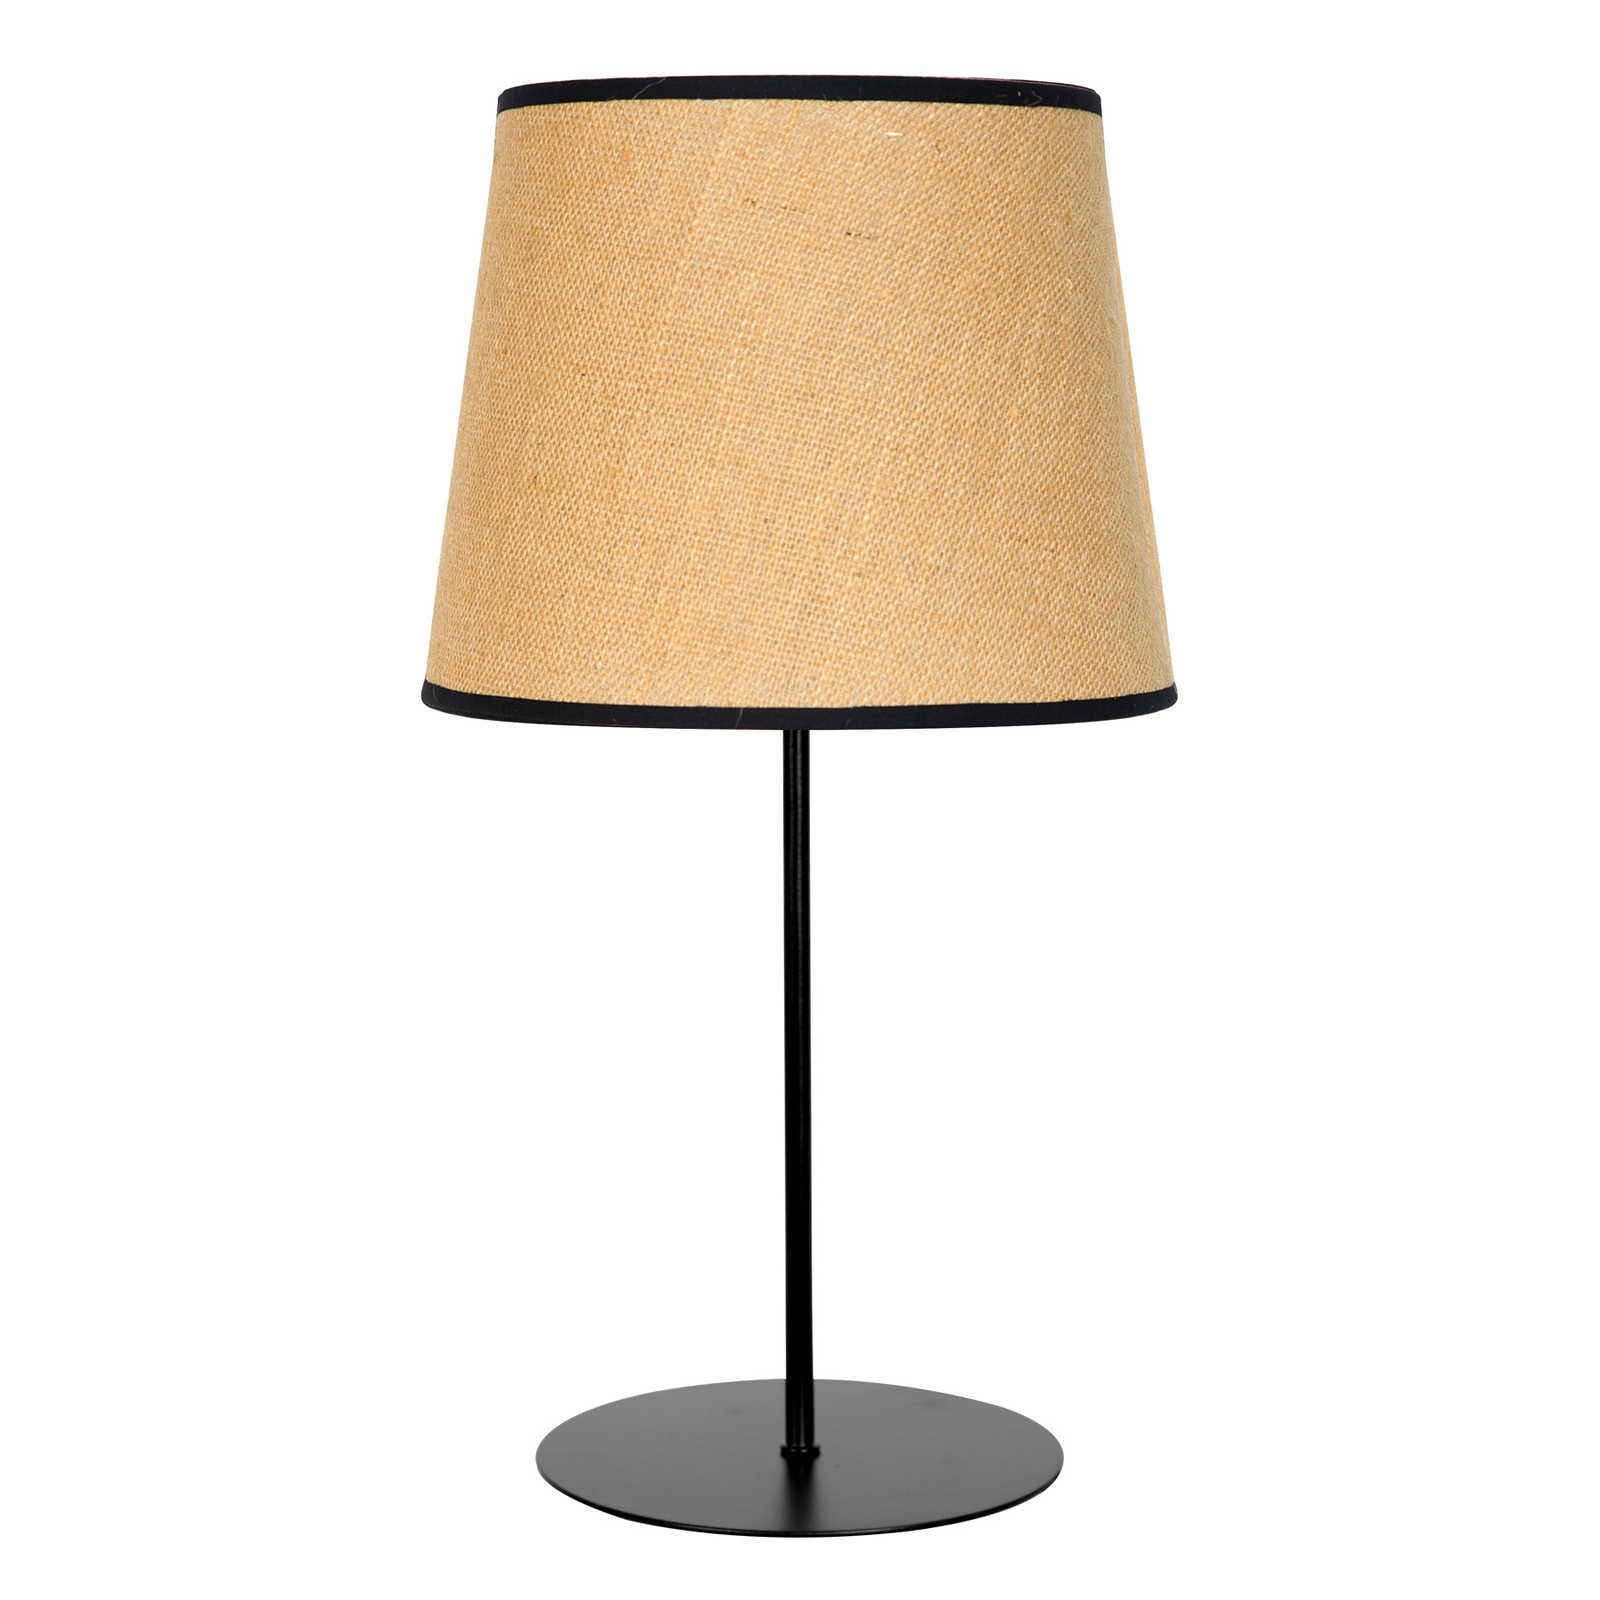 Jute&black table lamp, natural brown, 50 cm high